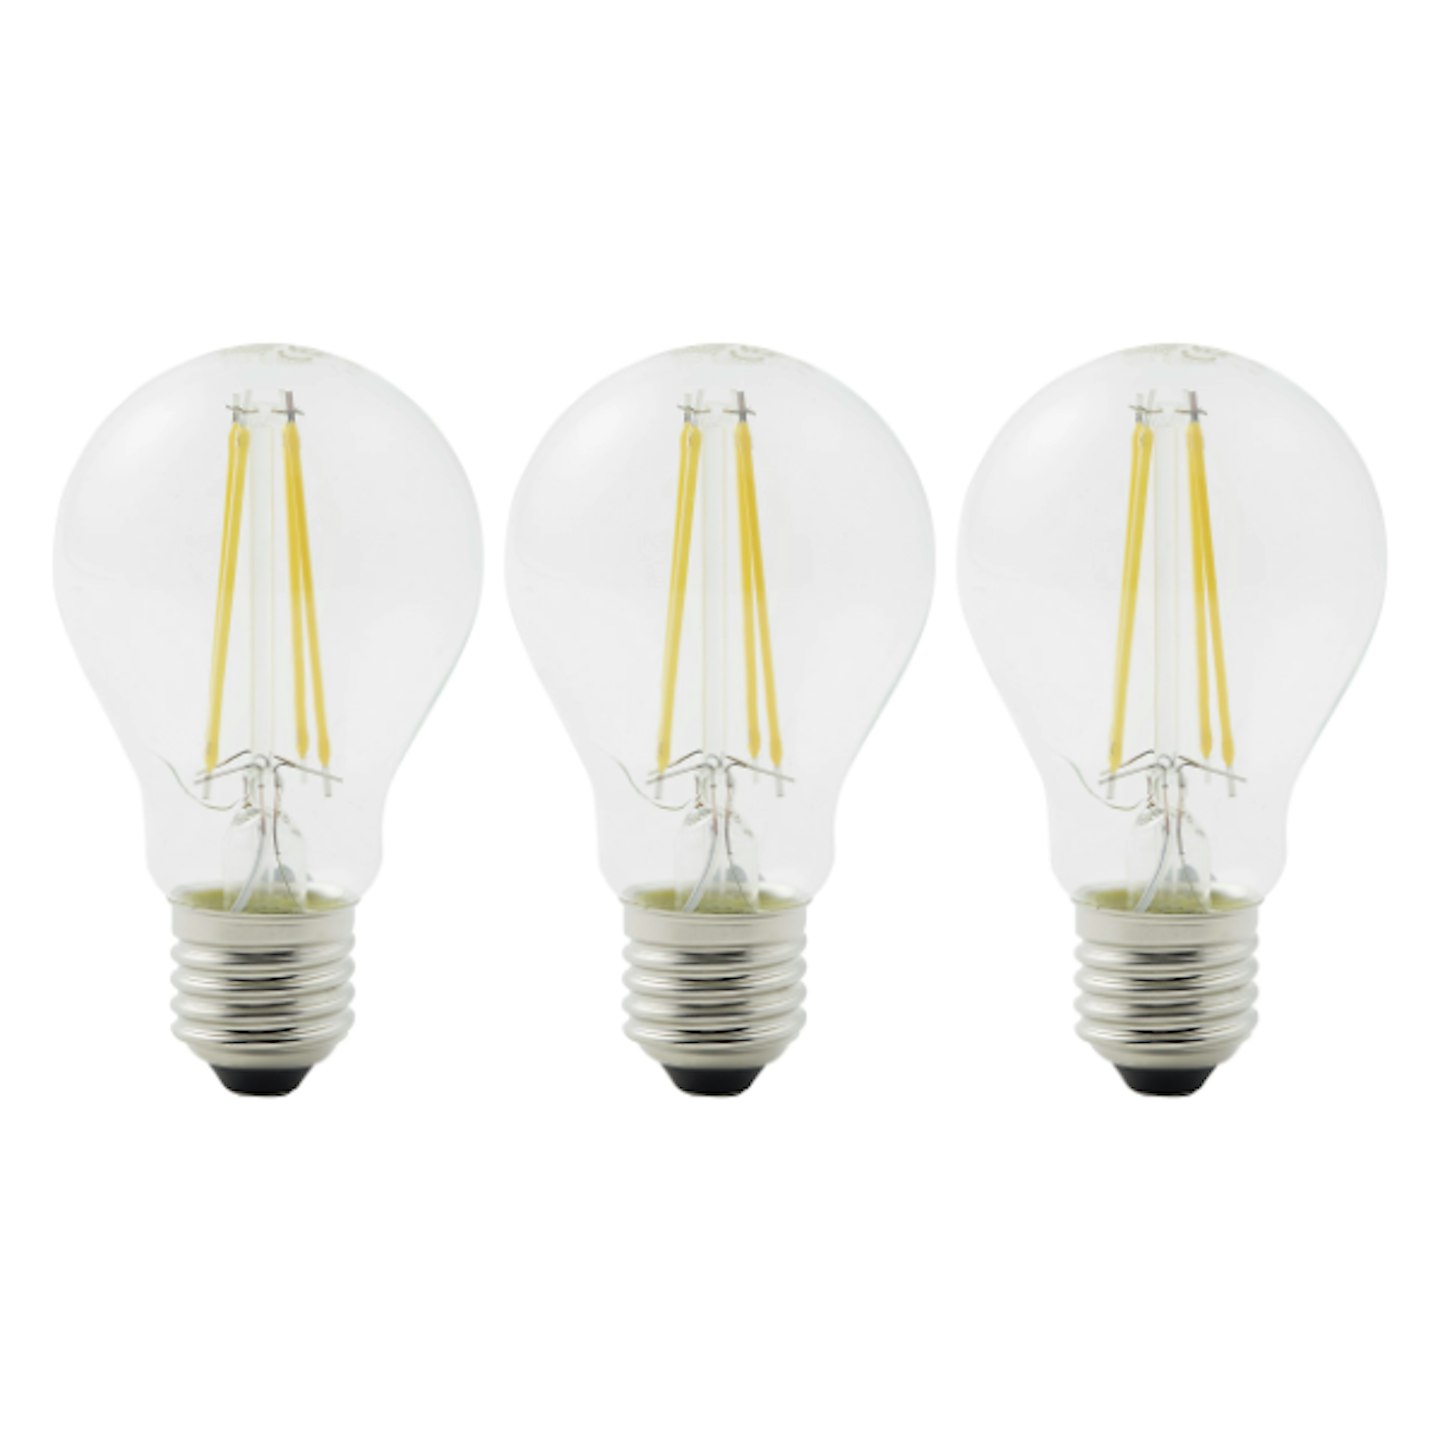 Diall GLS LED Light Bulb (3 Pack)